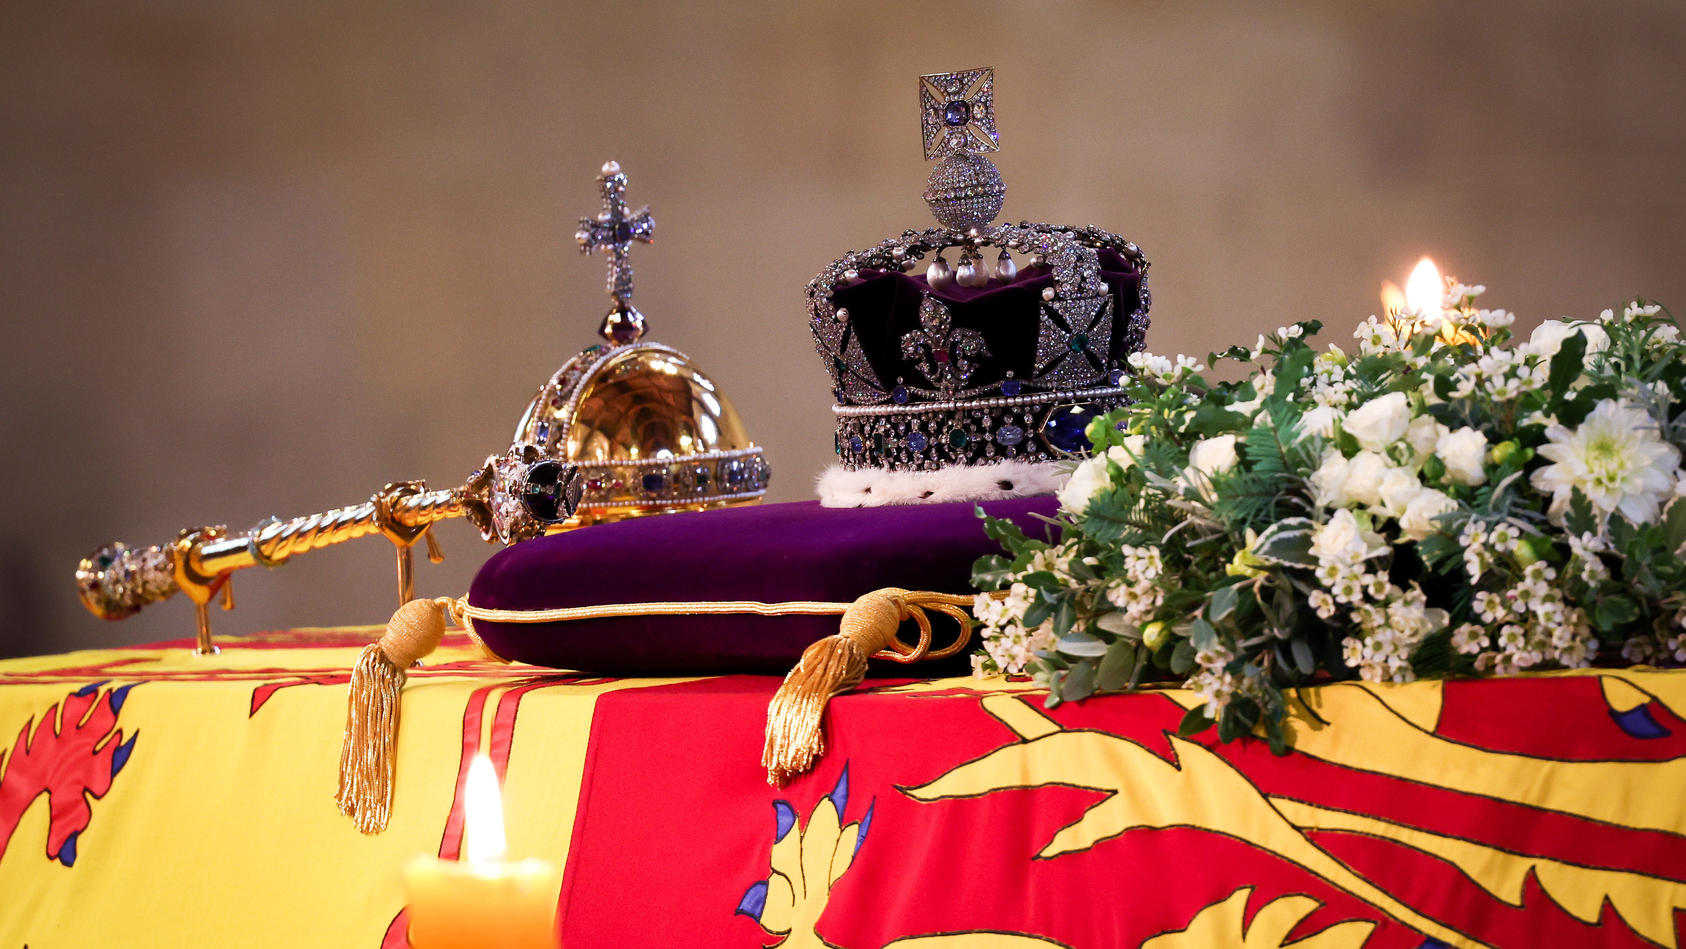 ティッカー – 女王に別れを告げる: 歴史家は君主制の終わりを予測します